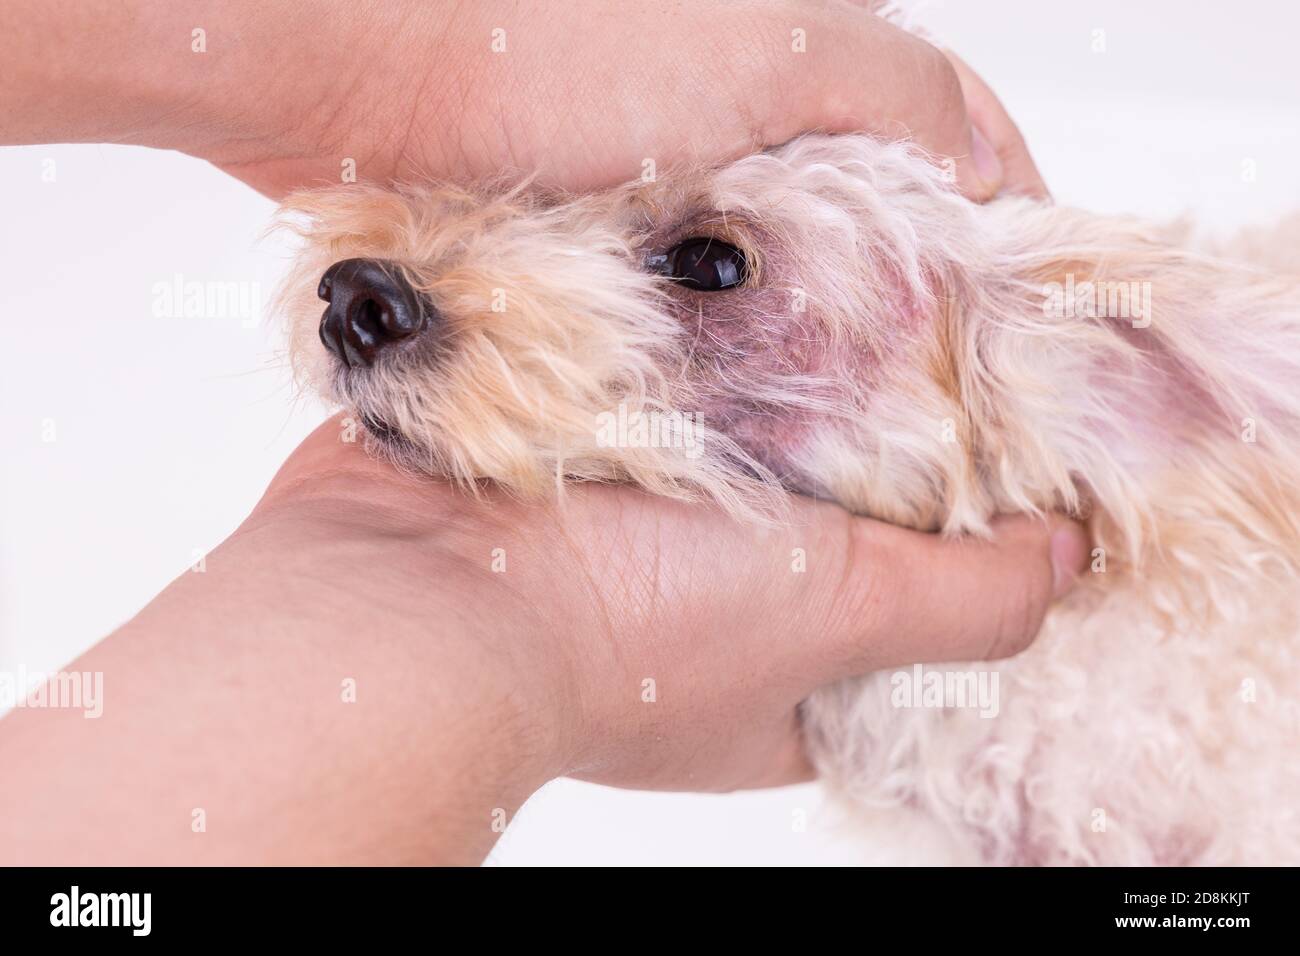 Veterinario inspeccionando el perro con irritación de la piel con levadura, infección por hongos Foto de stock